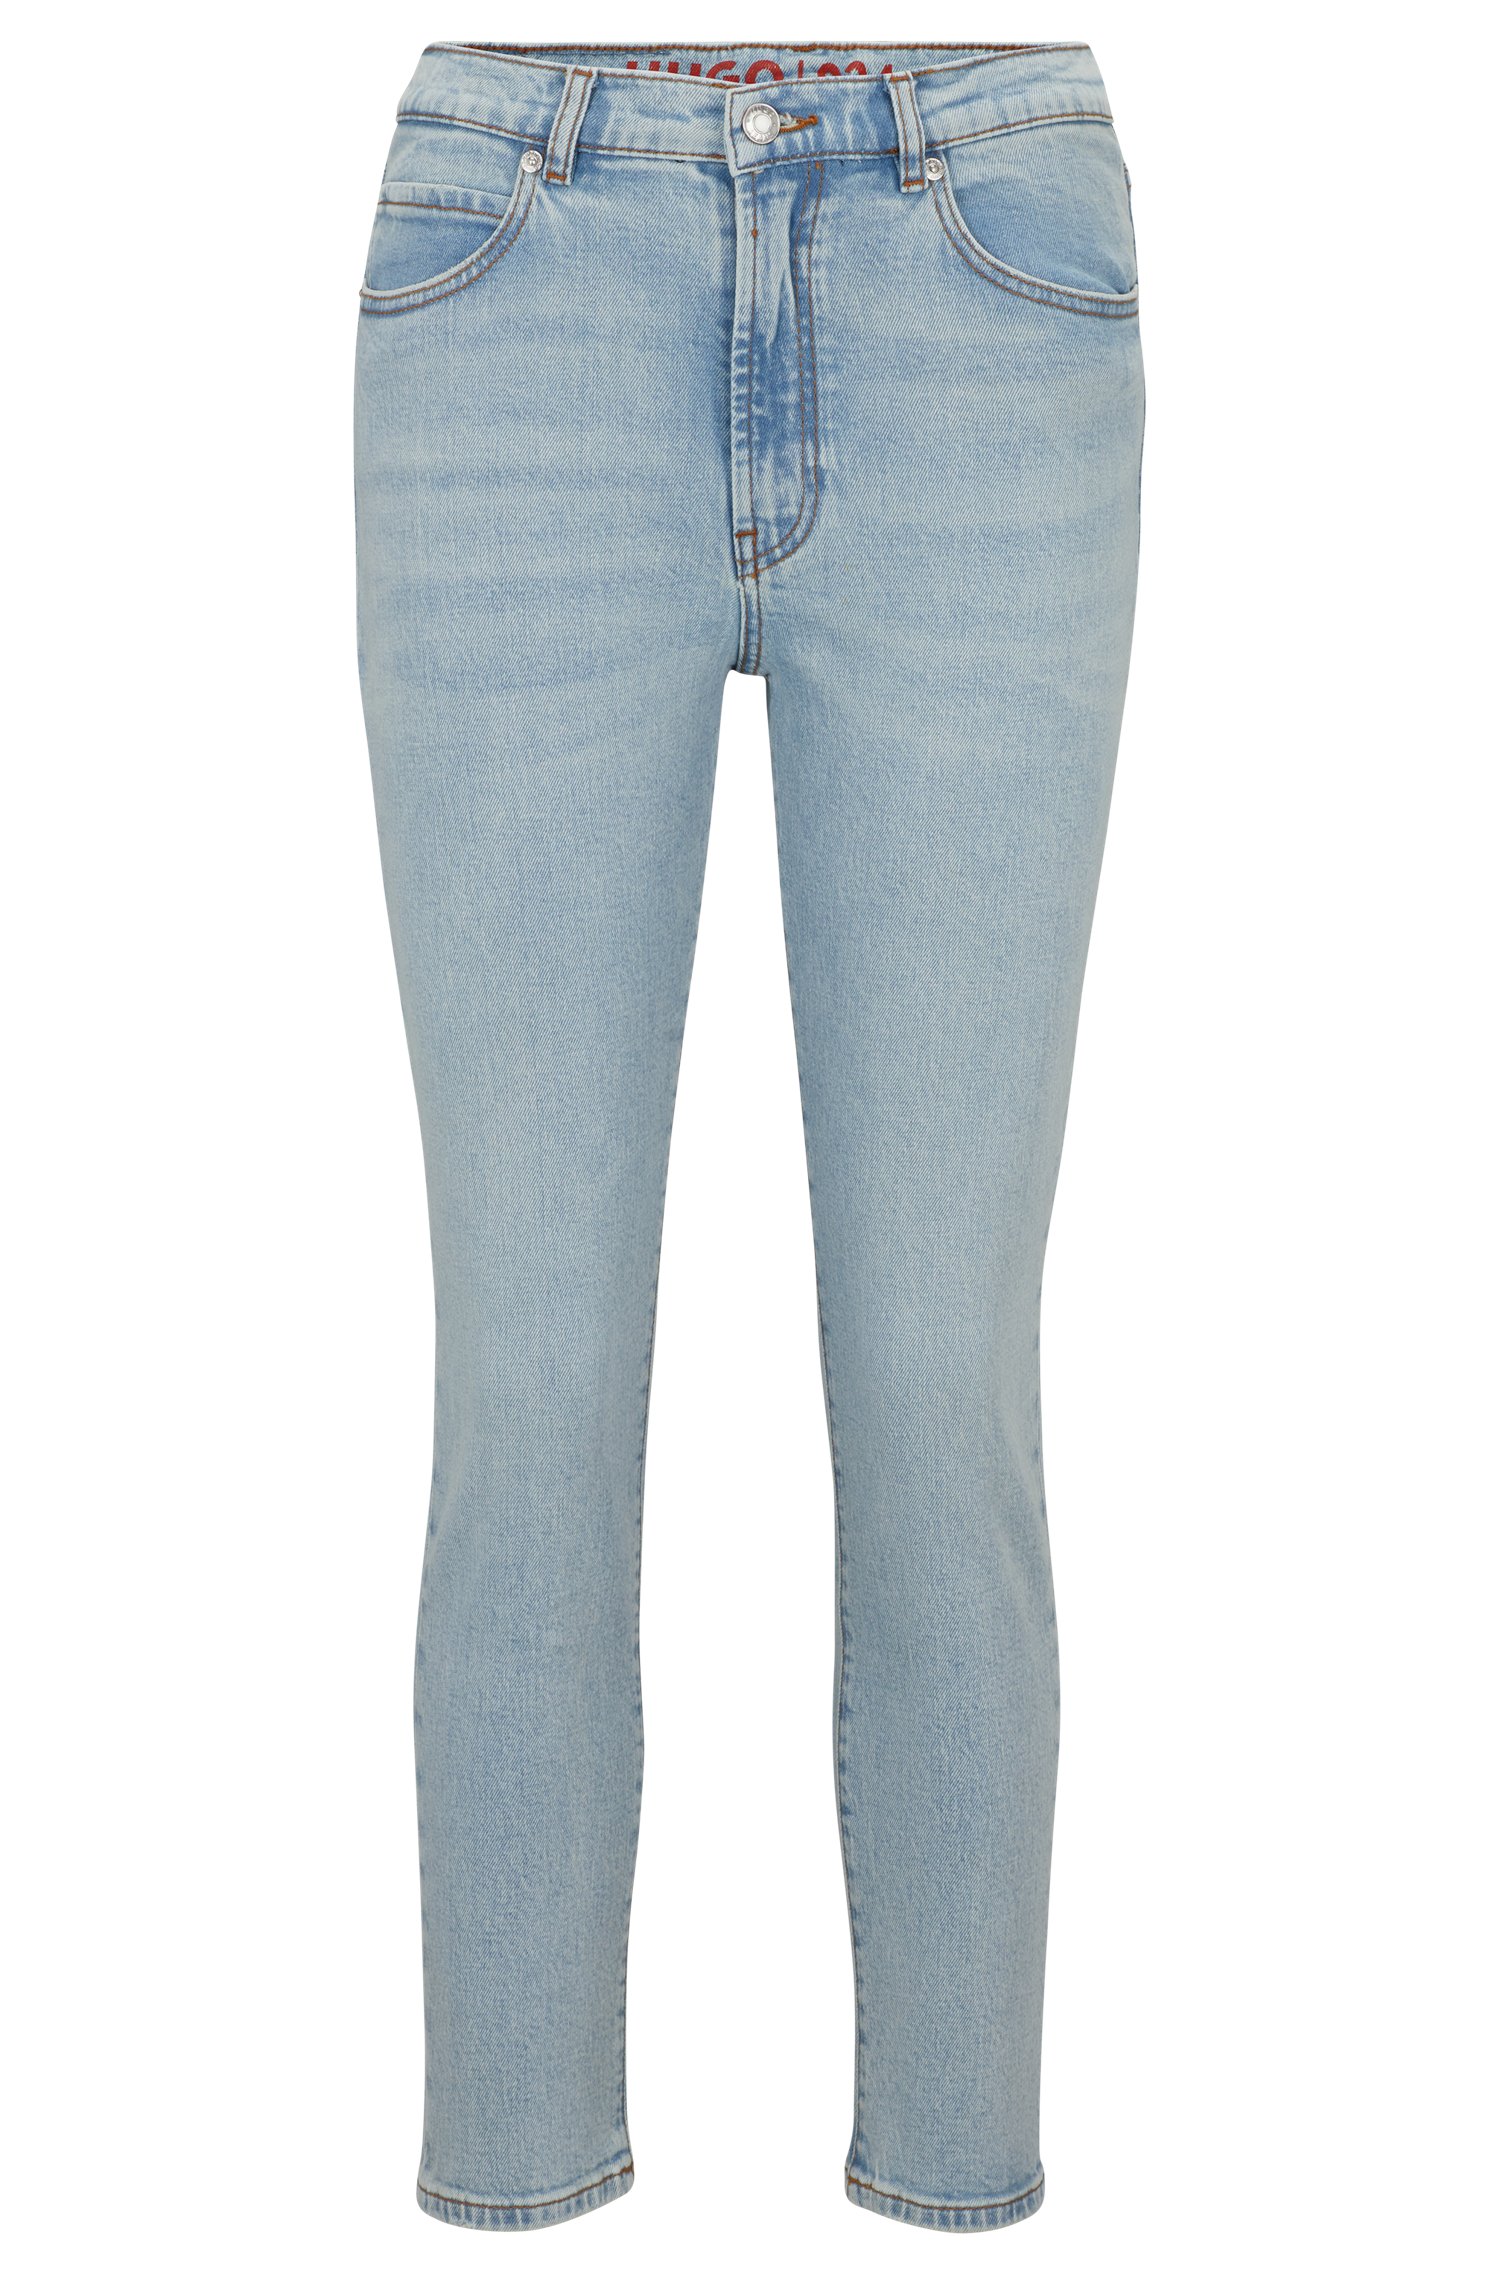 Джинсы Hugo Boss Slim-fit Jeans In Vintage-wash Stretch Denim, голубой джинсы широкого кроя hugo blue средне синего цвета с выгоревшим узором